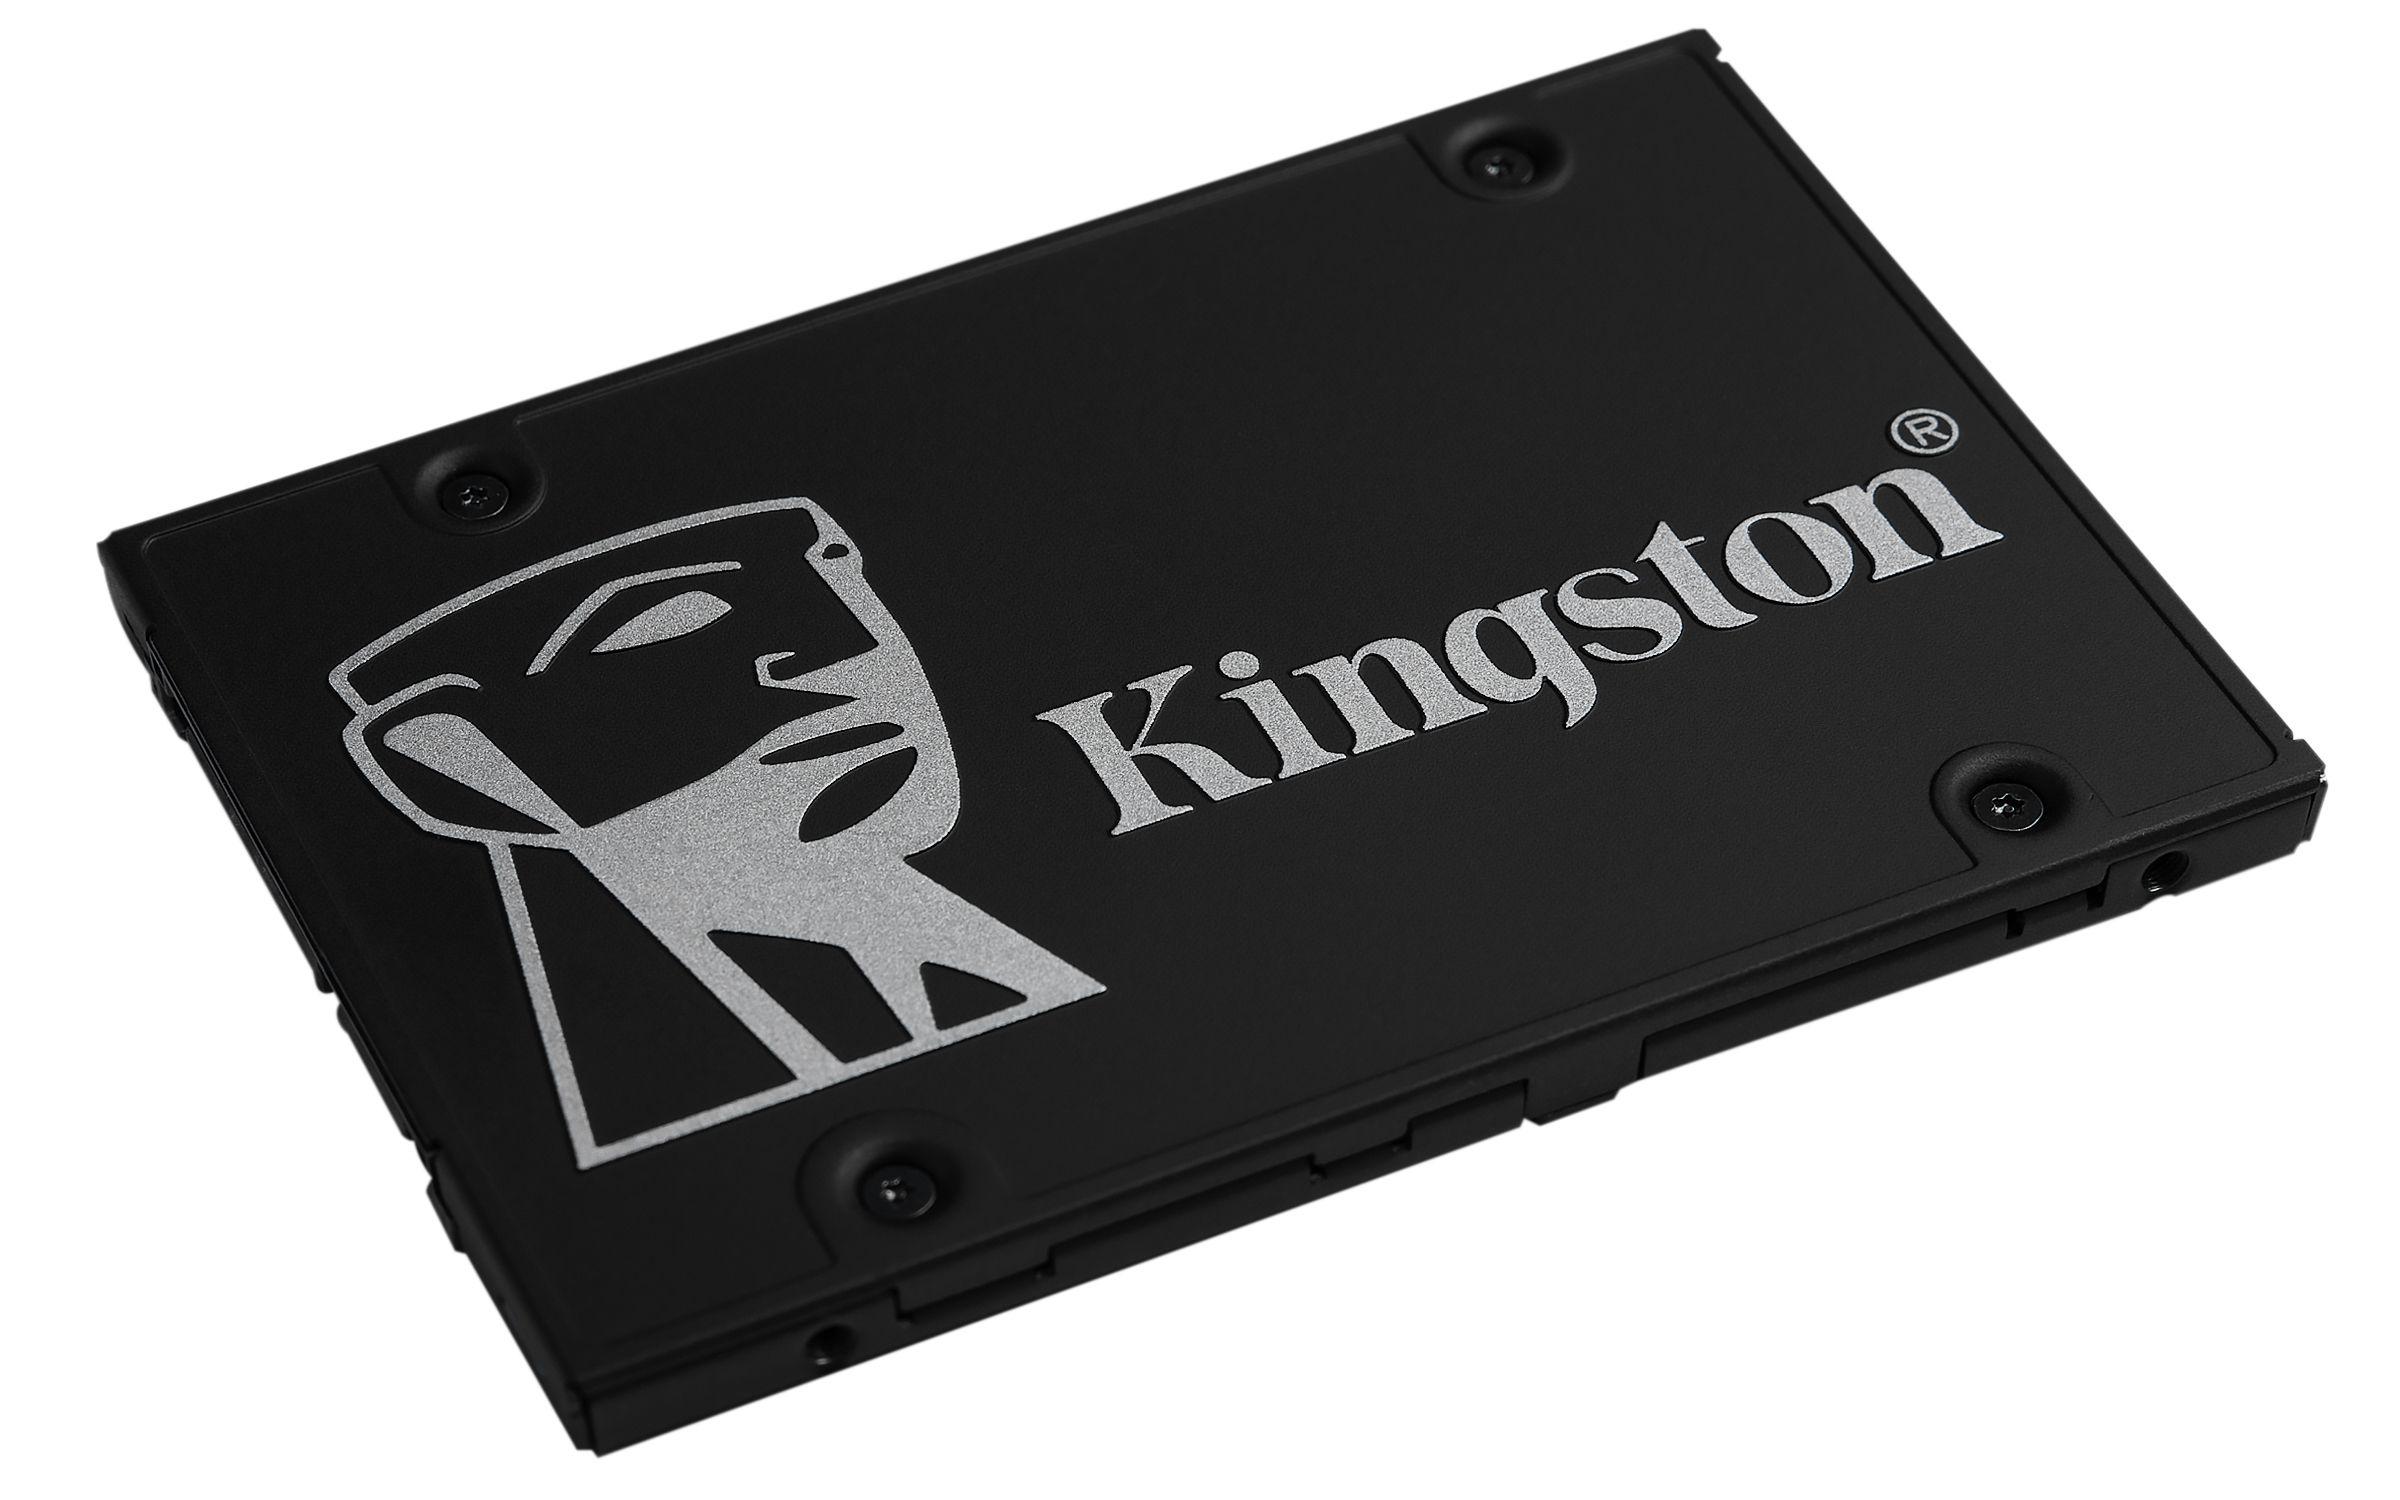 Dysk Kingston SKC600/256G (256 GB ; 2.5"; SATA III)